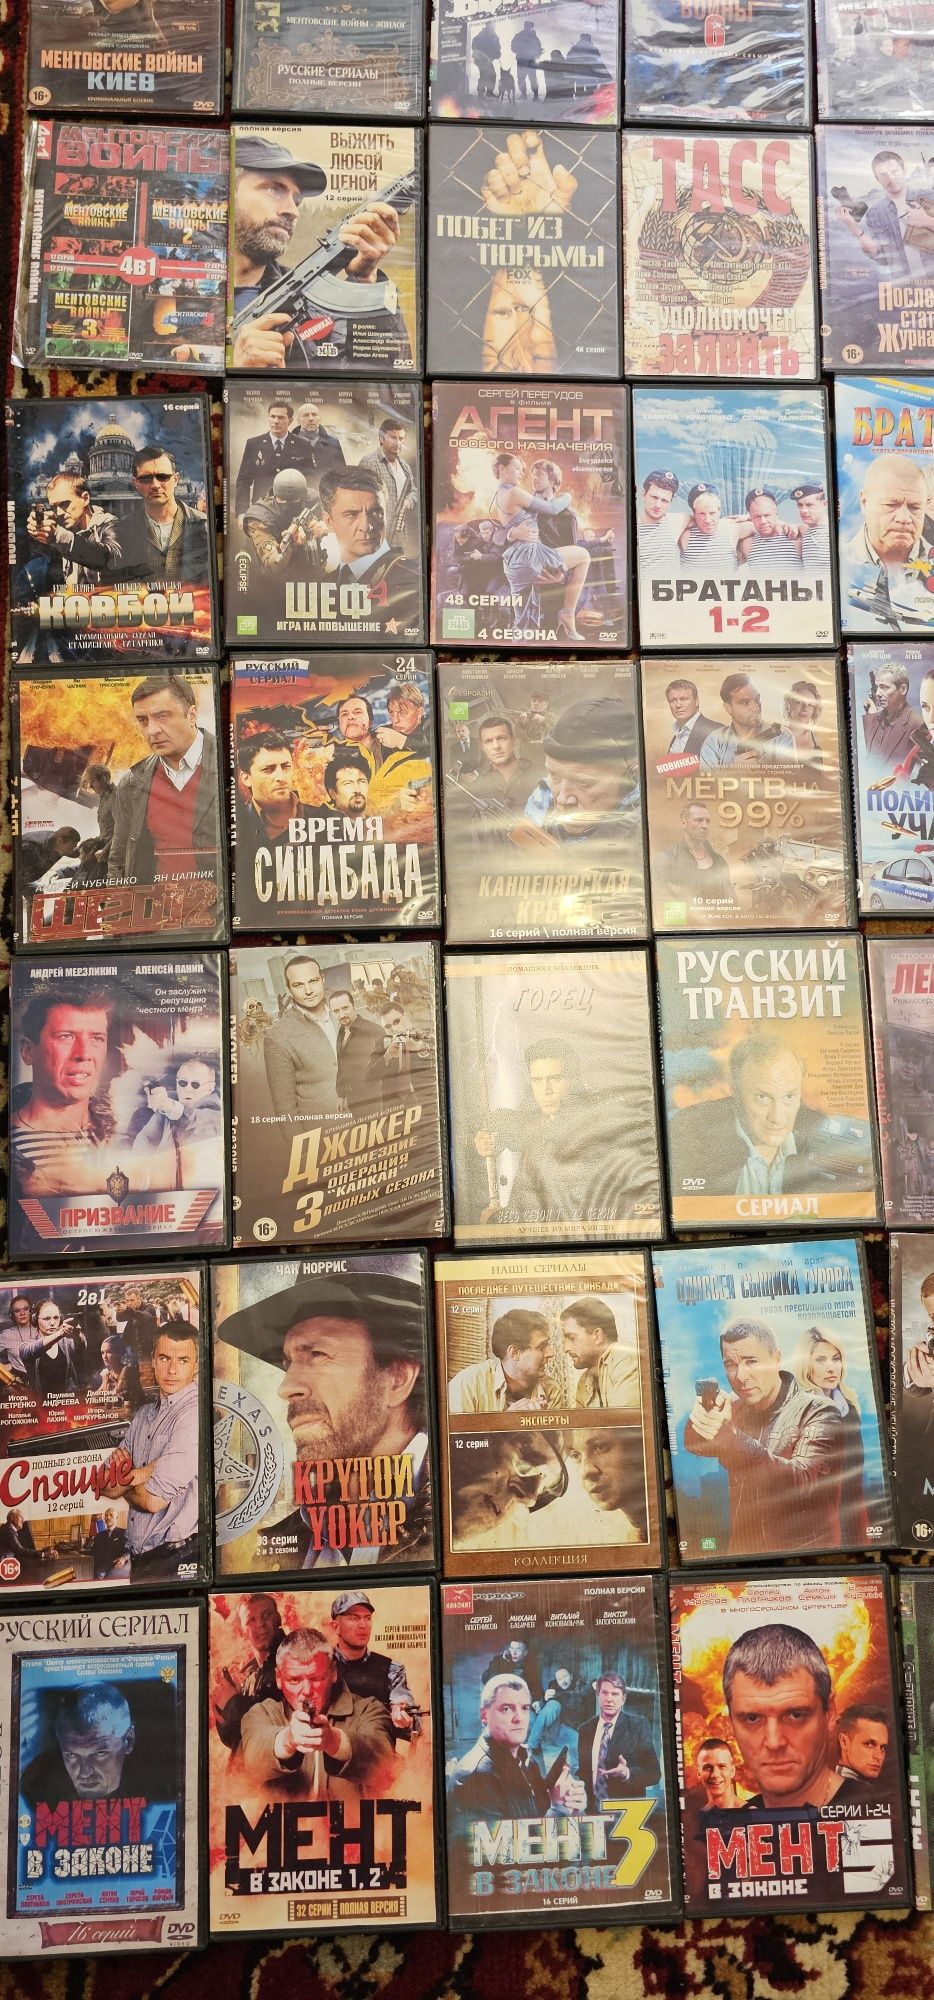 Продам DVD диски с фильмами и сериалами